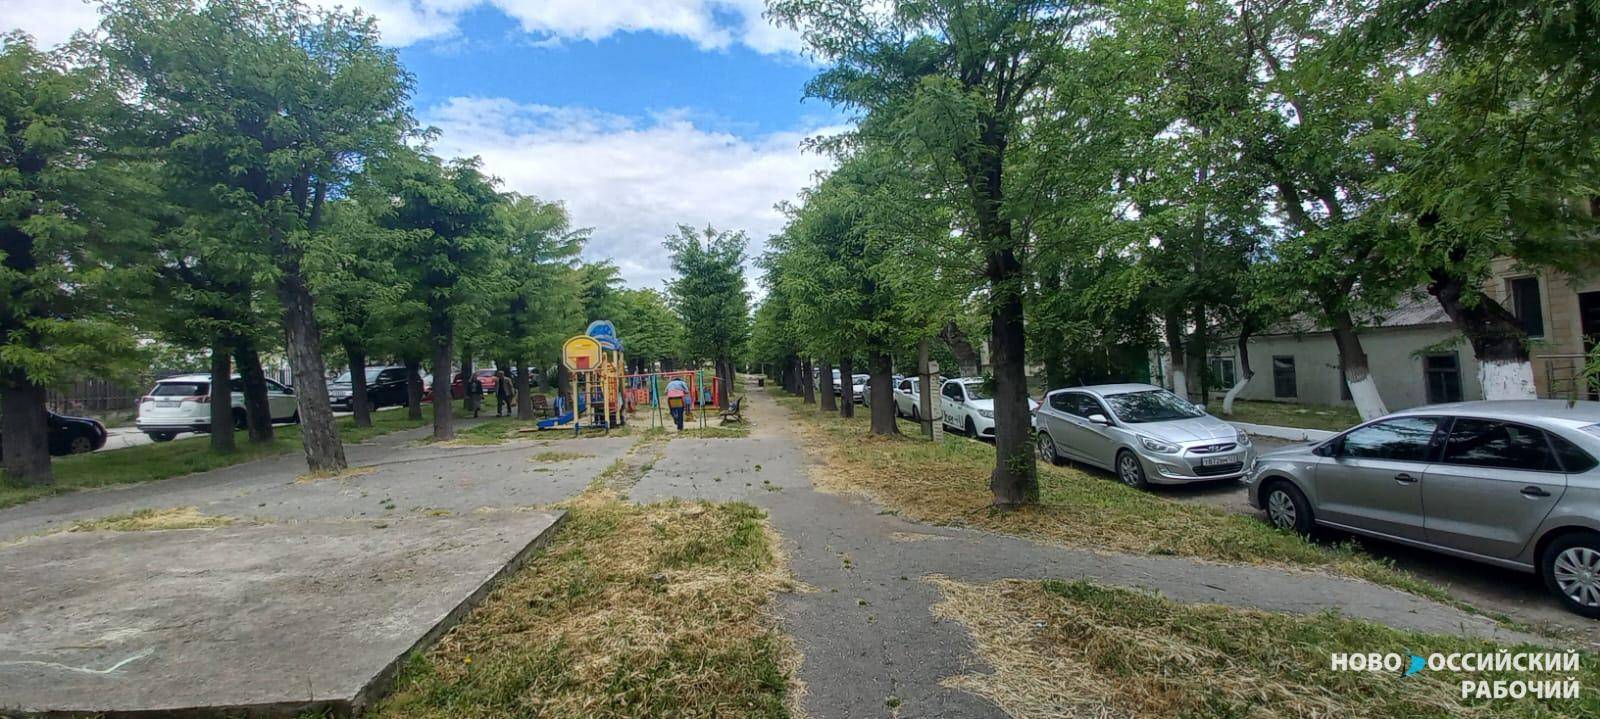 На улице Победы в Новороссийске зазеленела аллея, которую жалел весь город